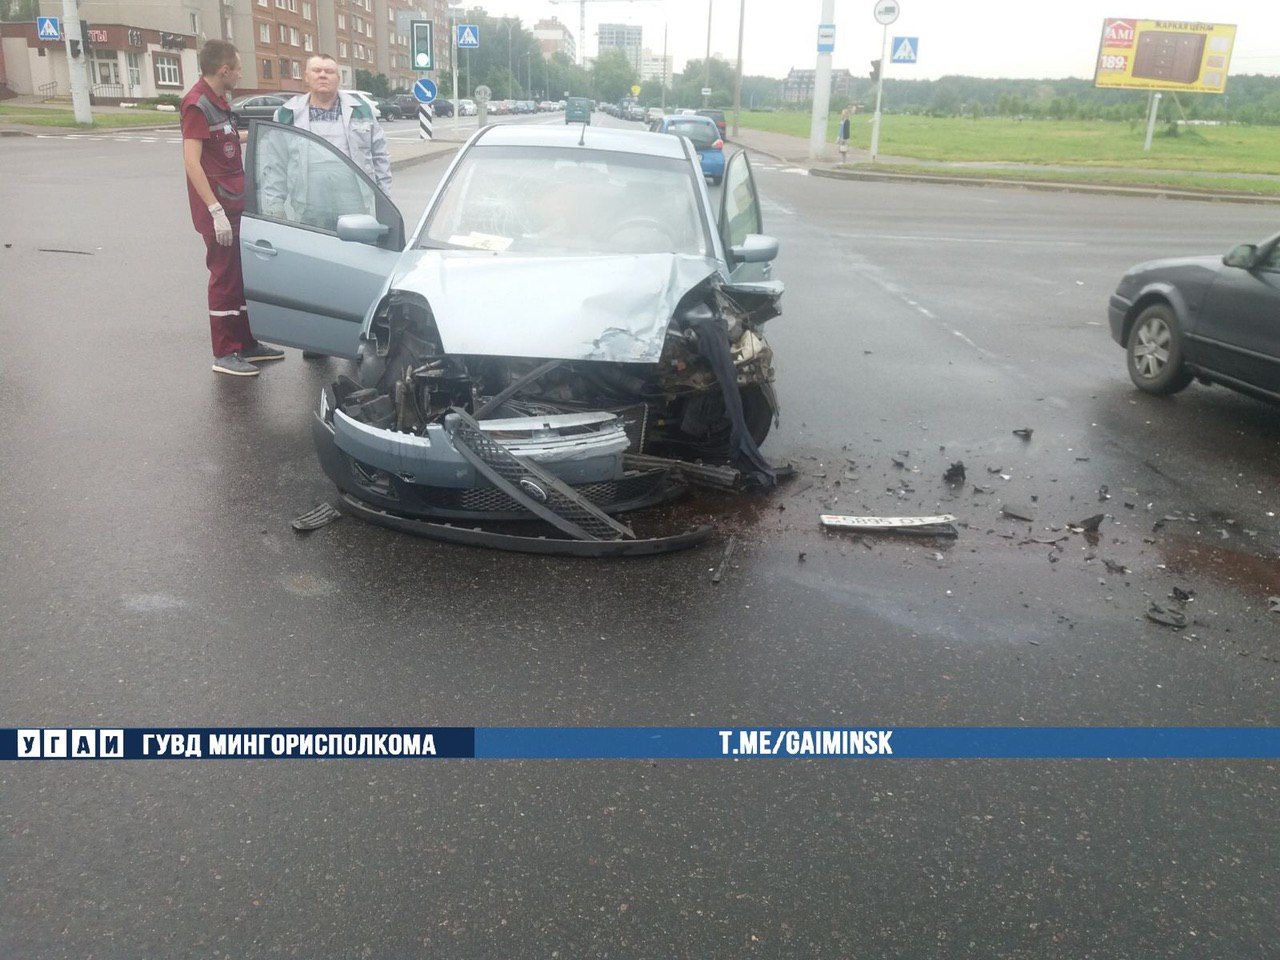 Renault после ДТП вылетел на тротуар и сбил мужчину в Минске